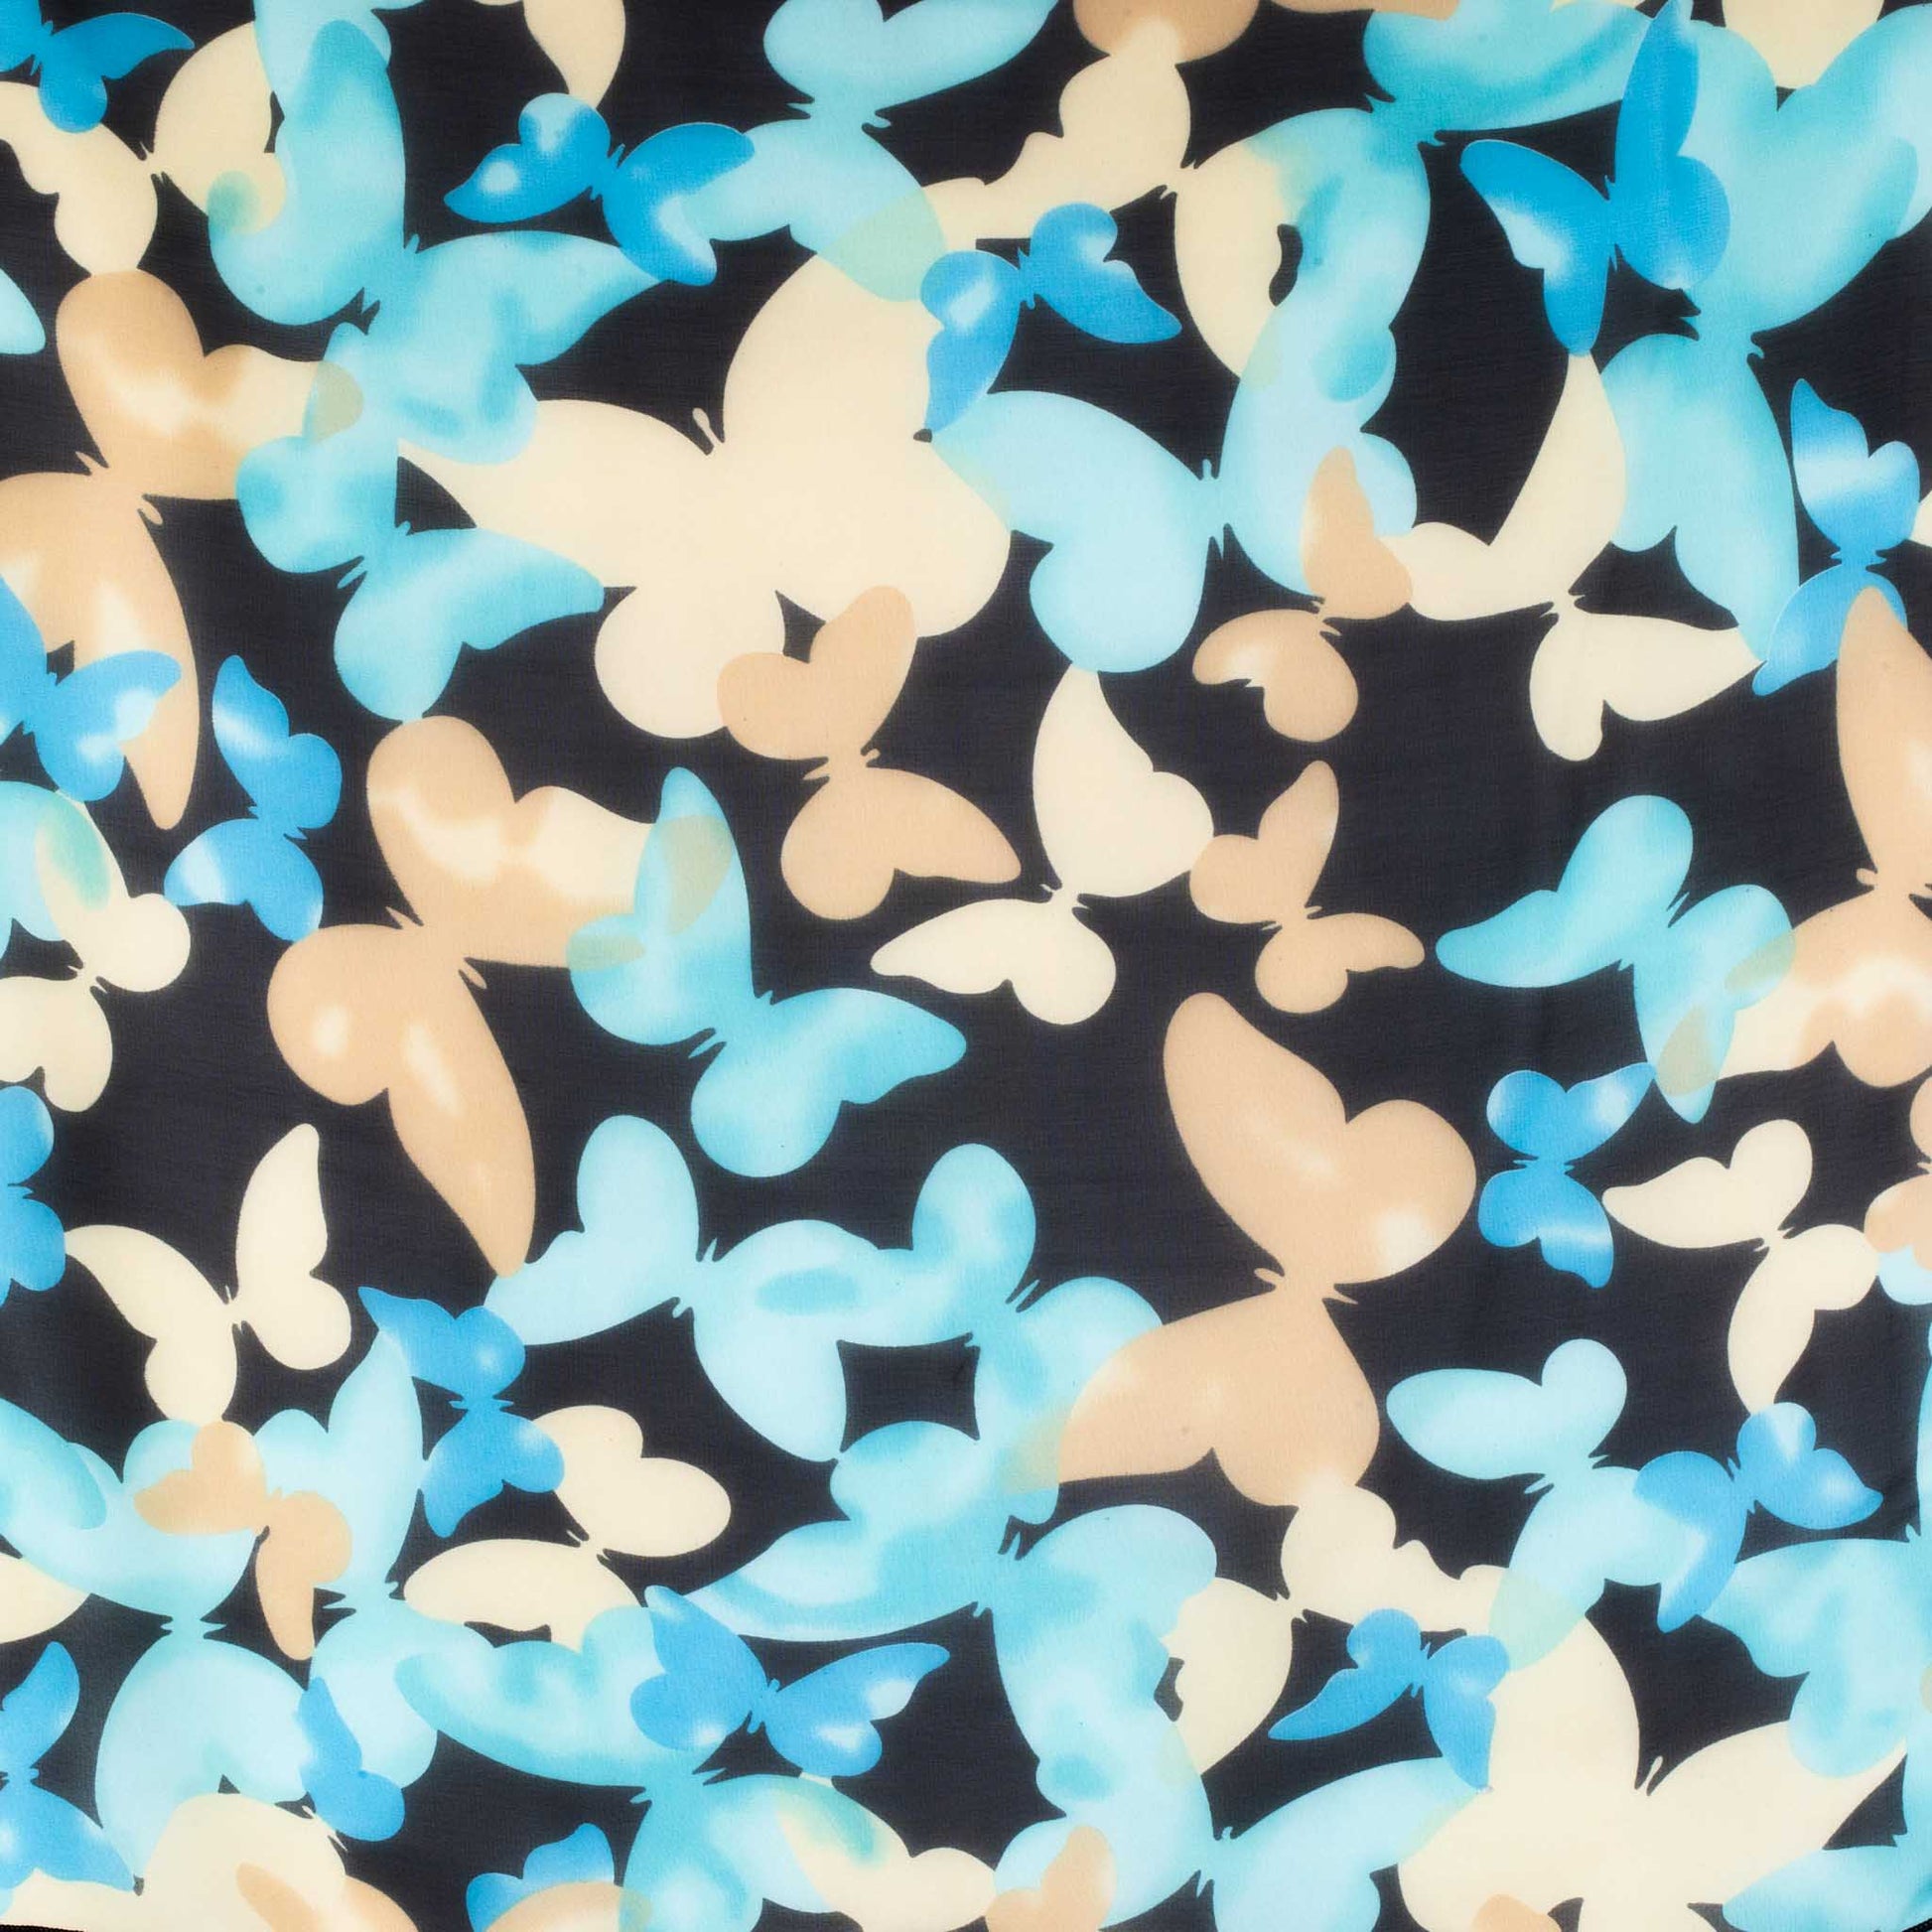 Eșarfă damă din mătase , imprimeu cu fluturi, 65 x 65 cm - Negru, Bej, Albastru